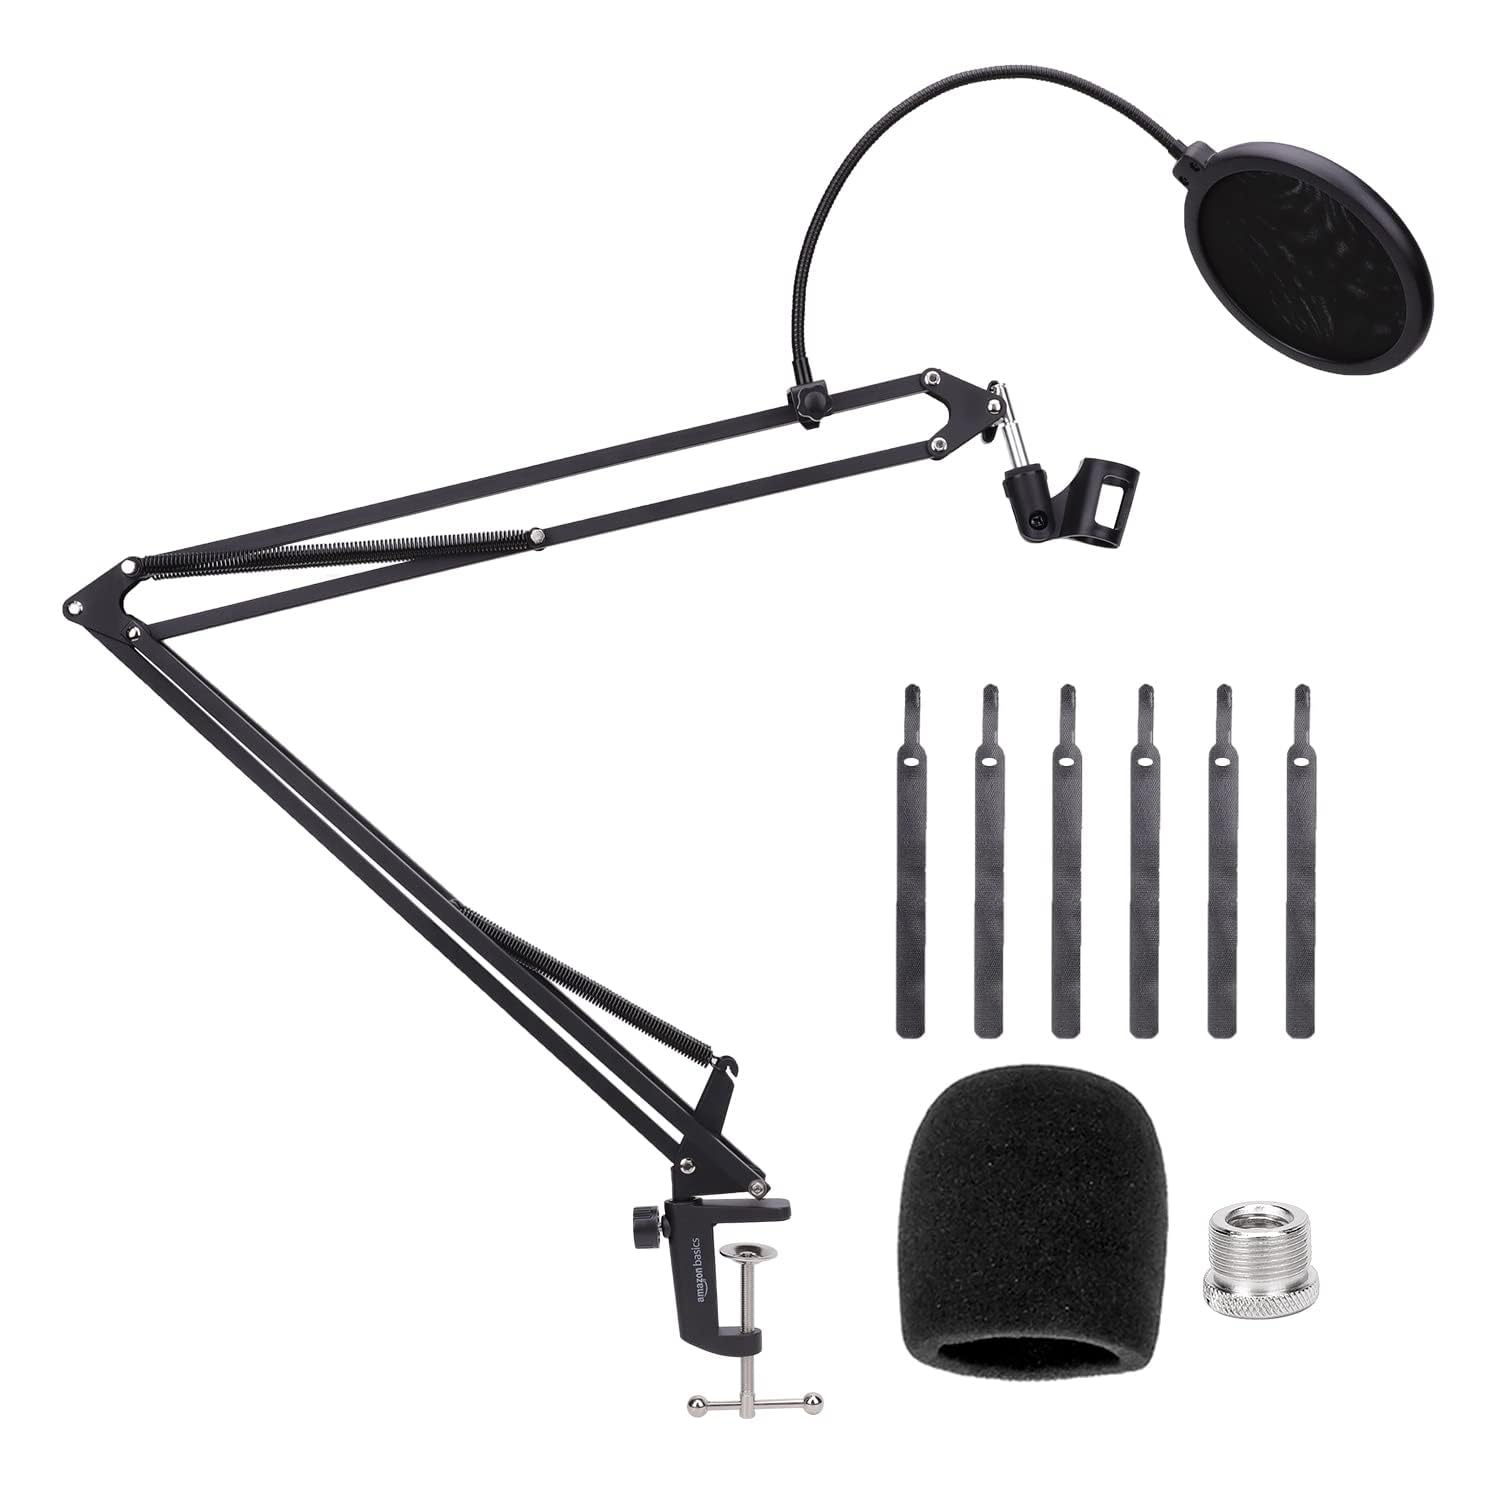 Magnifique Amazon Basics Support/bras de microphone avec bonette, bras de 19 pouces/48,2 cm, Noire xwi3fbUjR stylé 